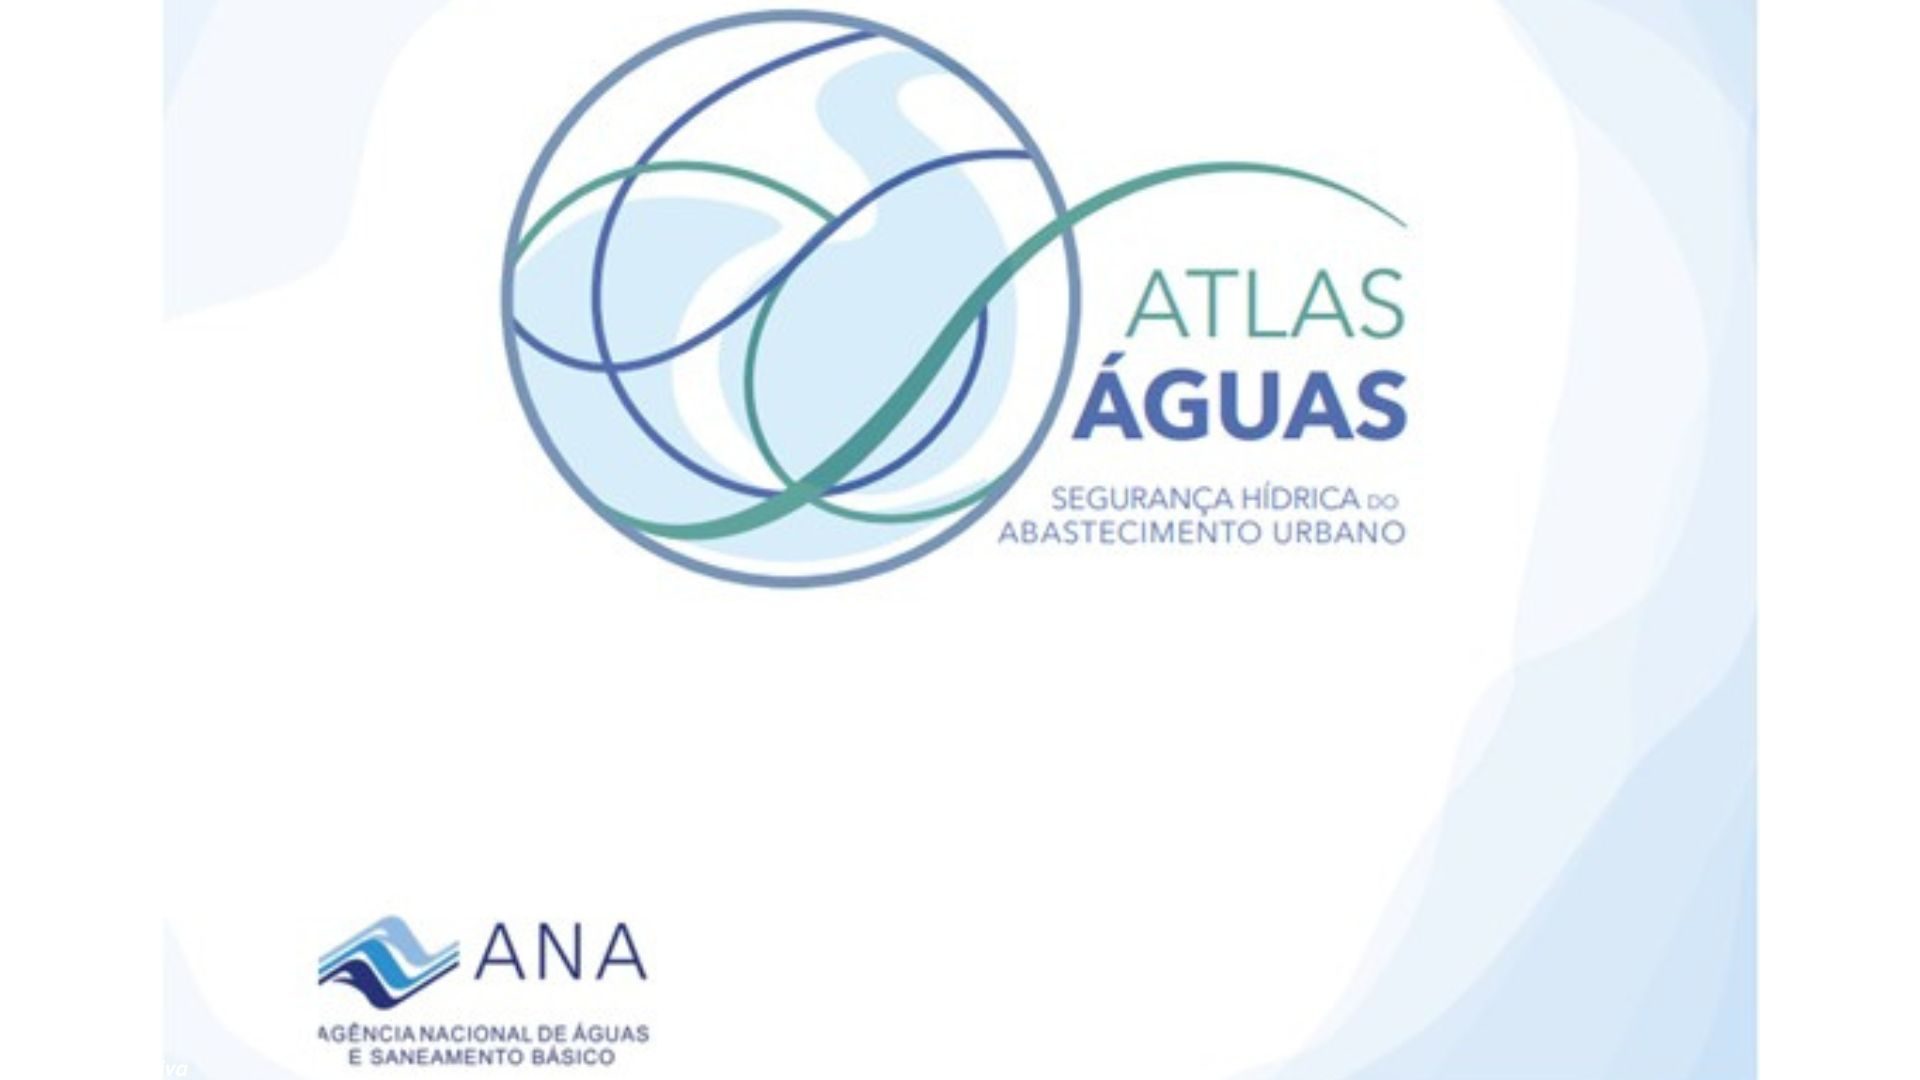 Atlas Águas: Segurança hídrica do abastecimento urbano